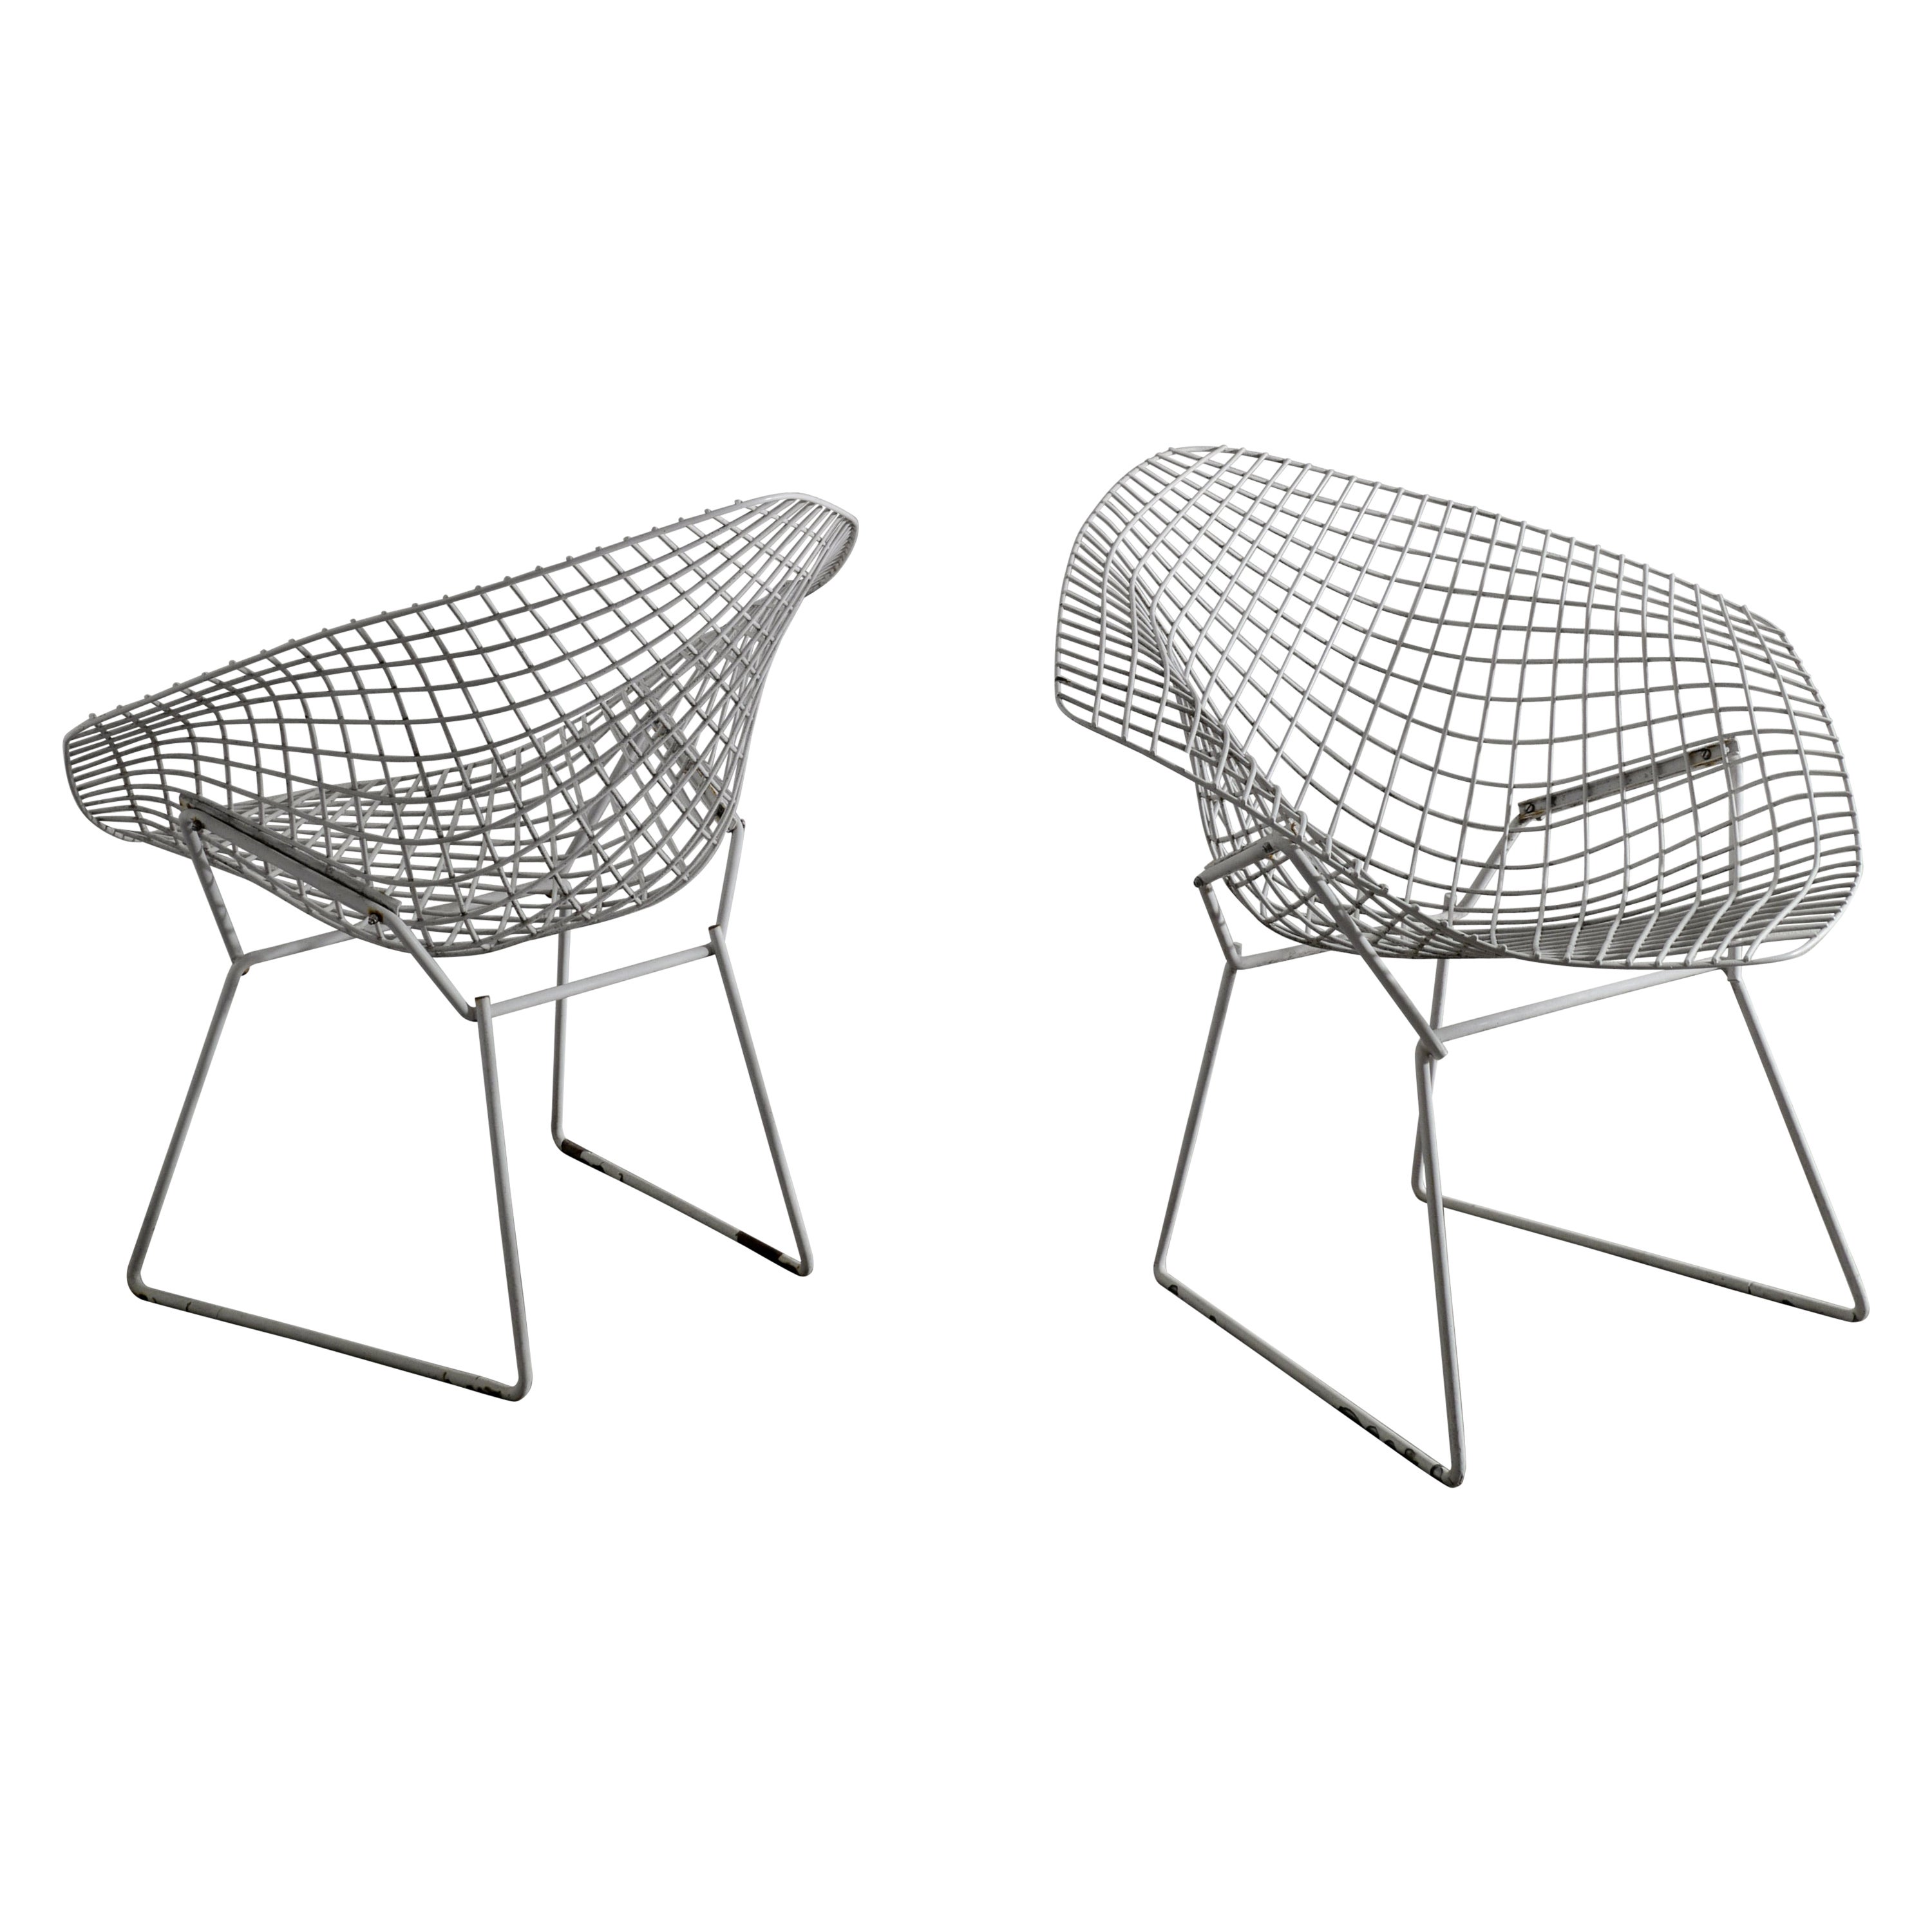 Paire de chaises blanches Harry Bertoia "Diamond Chairs" produites par Knoll, années 1950